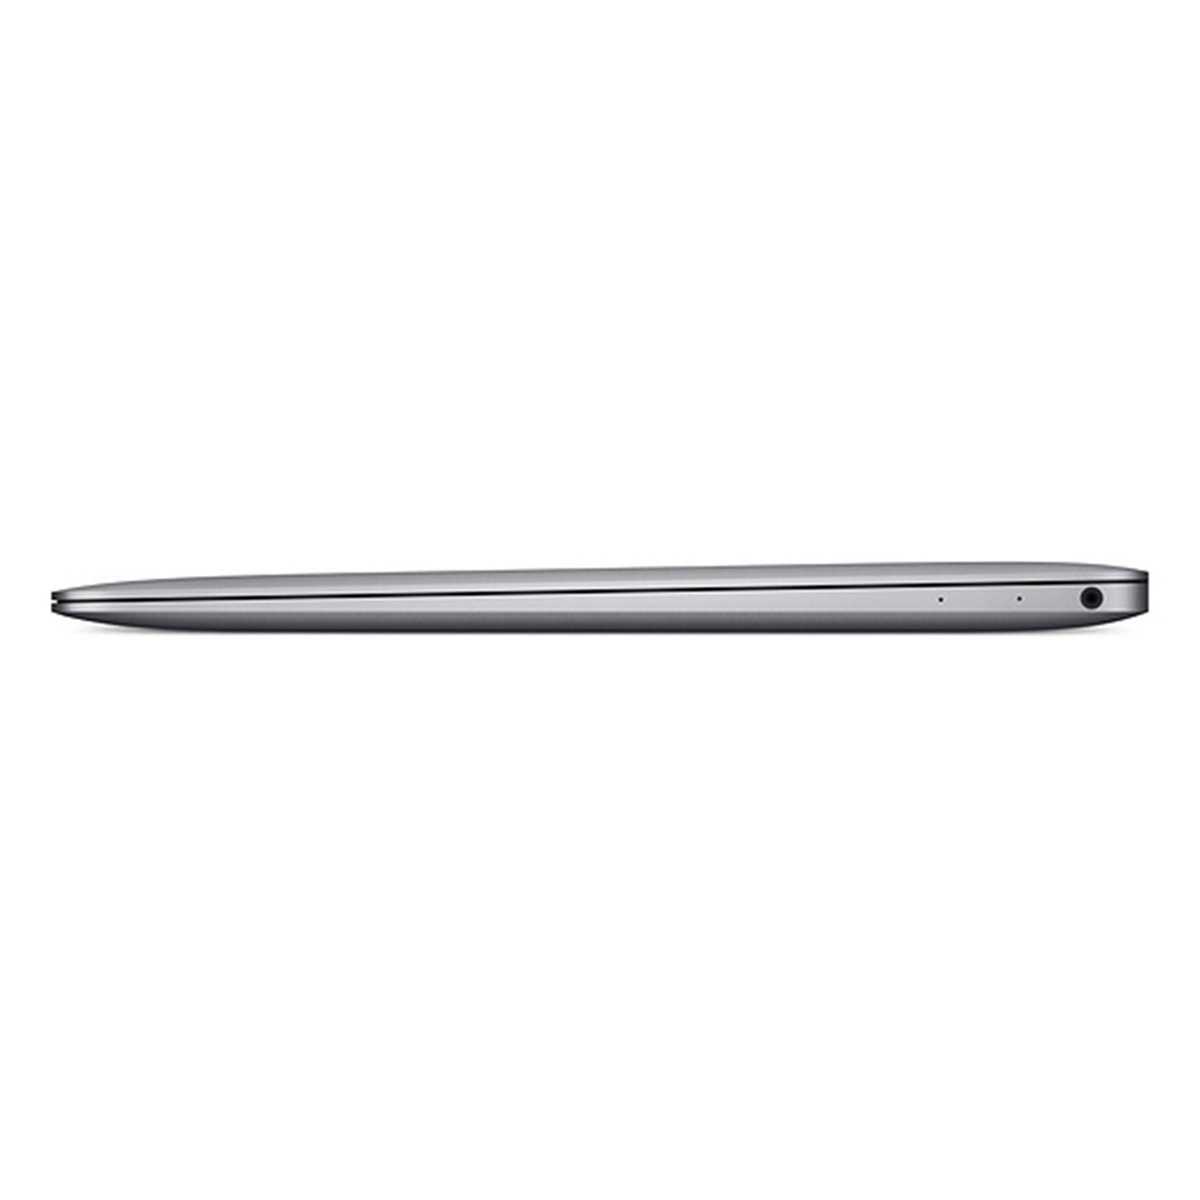 Apple Laptop 12 inches LED Laptop Space Grey (MNYG2AB/A) - Intel i5 1.3 GHz, 8 GB RAM, 512 GB Hybrid (HDD/SDD), English/Arabic Keyboard